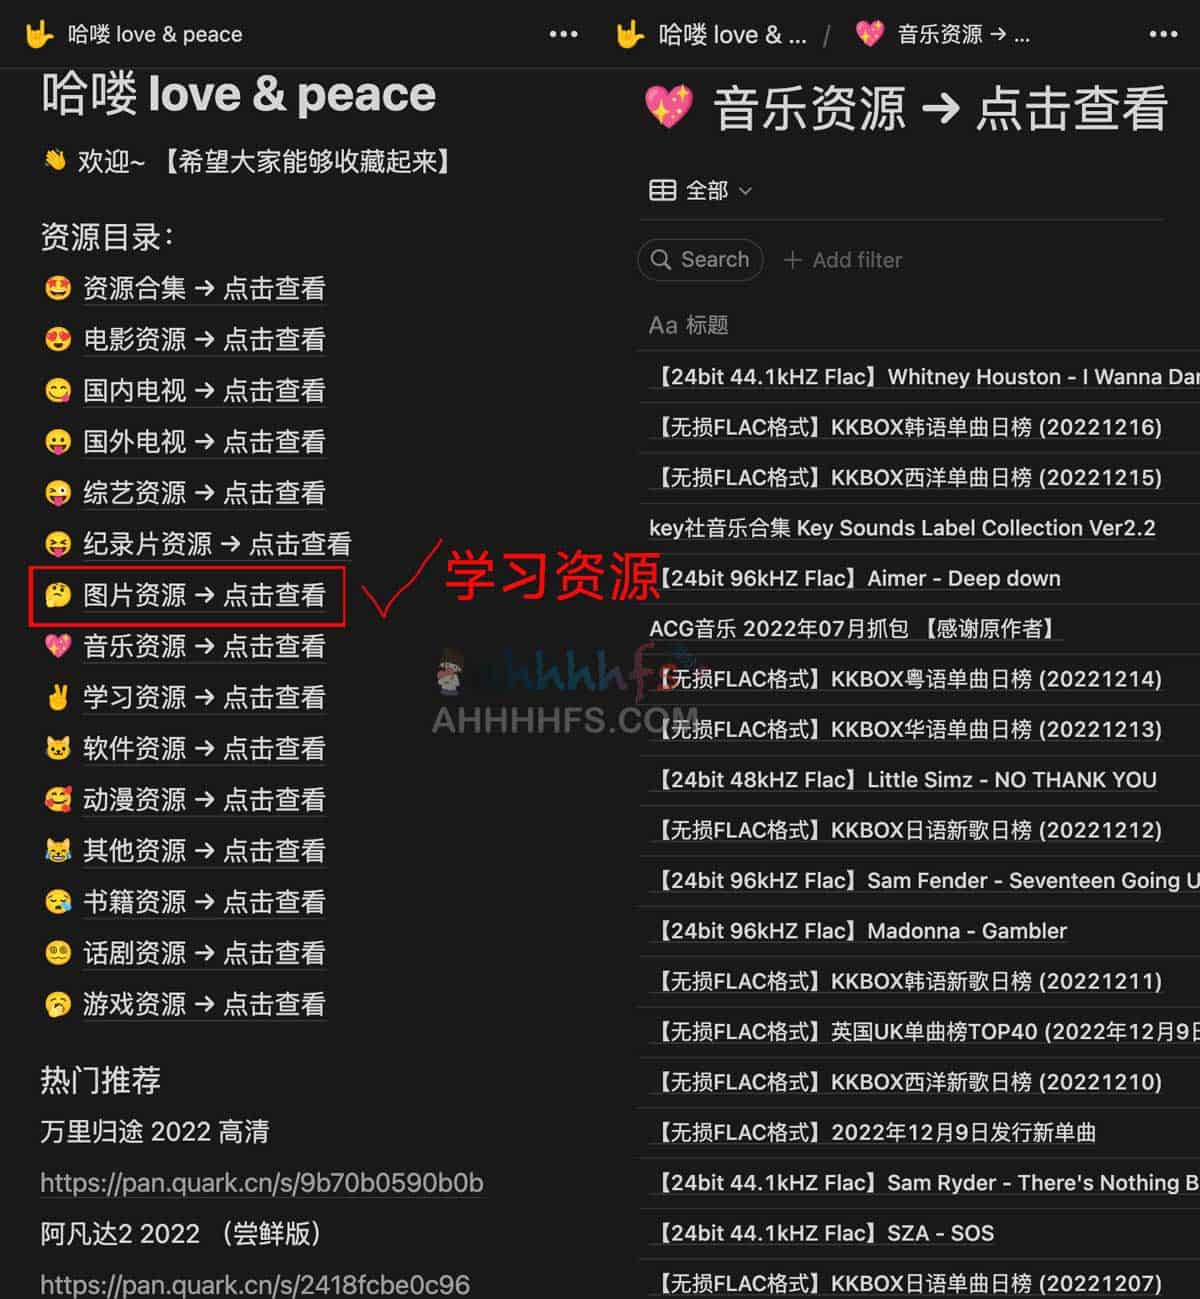 夸克网盘资源Notion站点-哈喽 love & peace